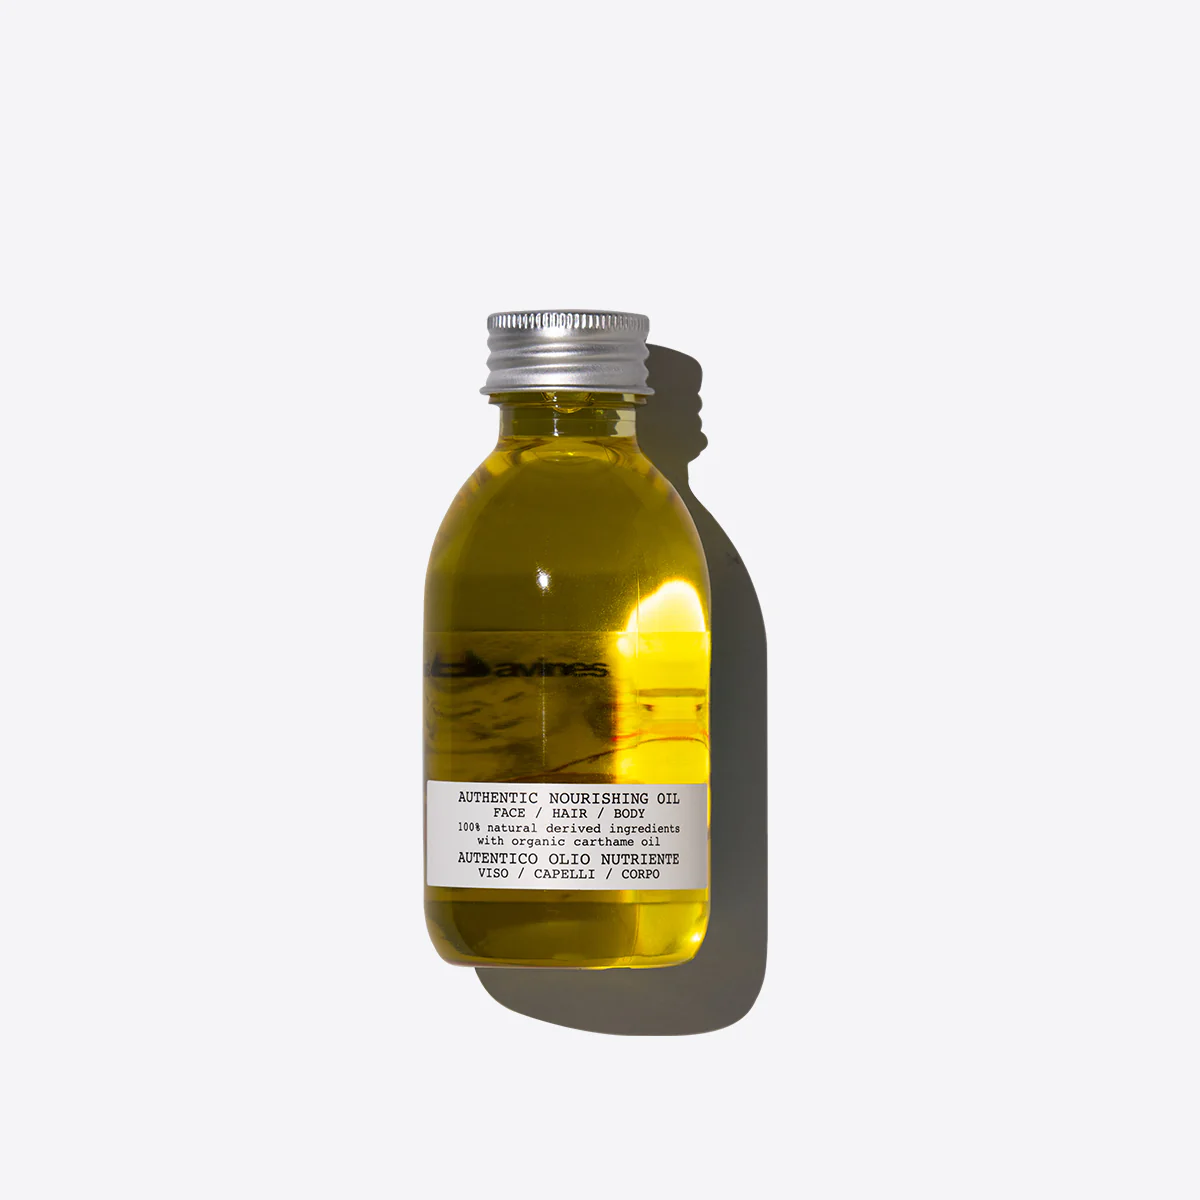 Authentic Nourishing Oil - Питательное масло для лица, волос и тела , объем 140 мл